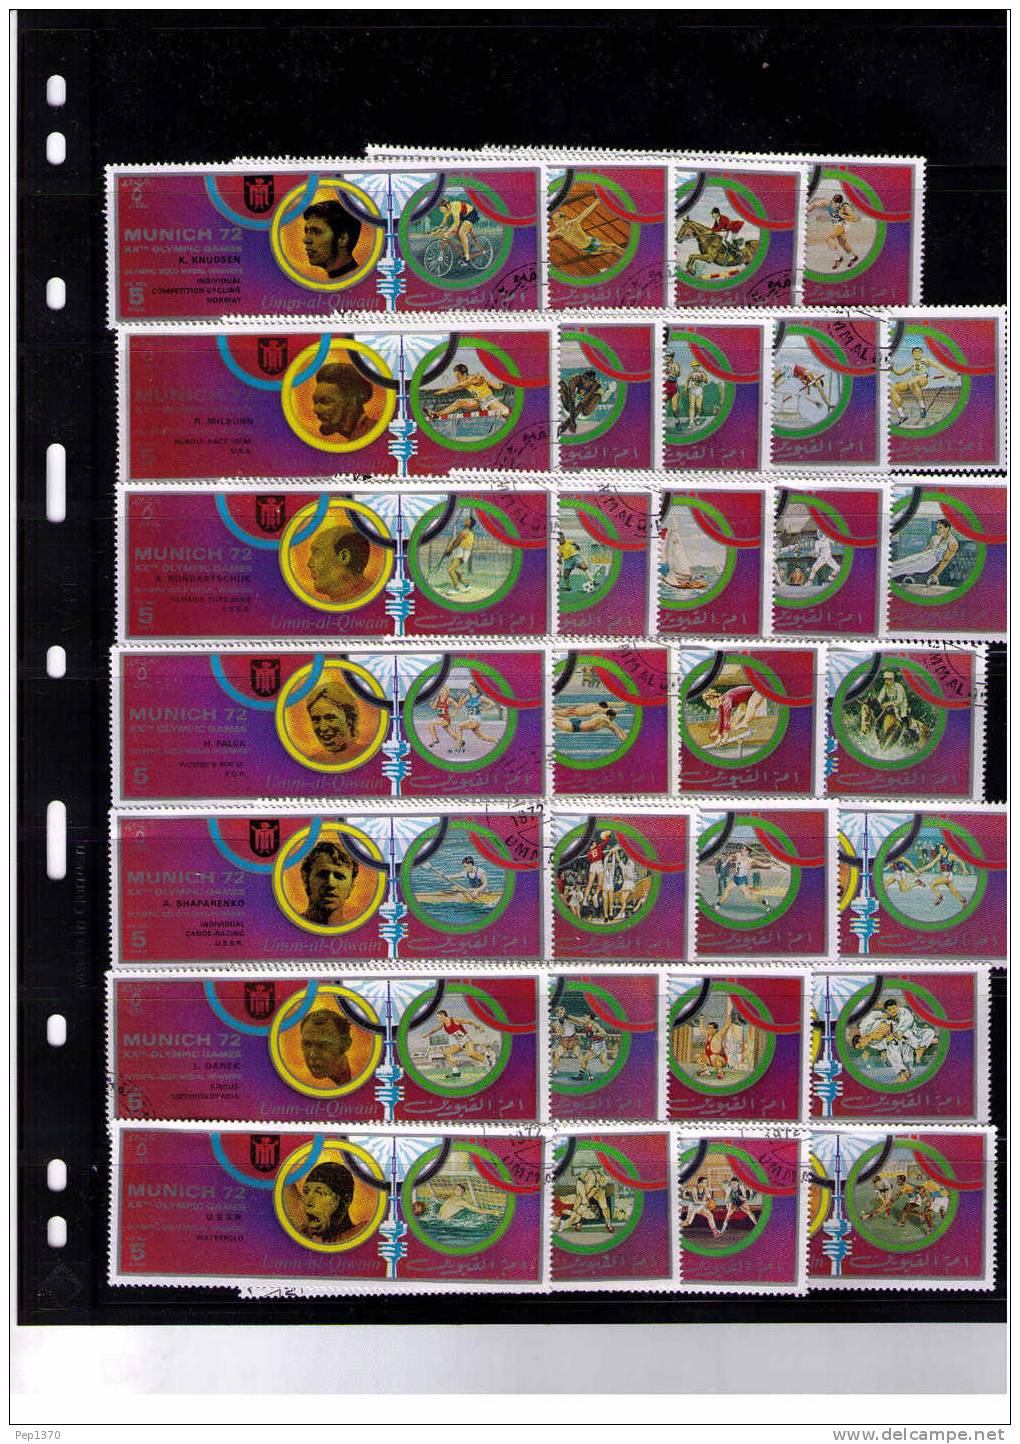 UMM AL QIWAIN 1972 - JUEGOS OLIMPICOS DE MUNICH 72 - SERIE DE 30 SELLOS - Wasserball